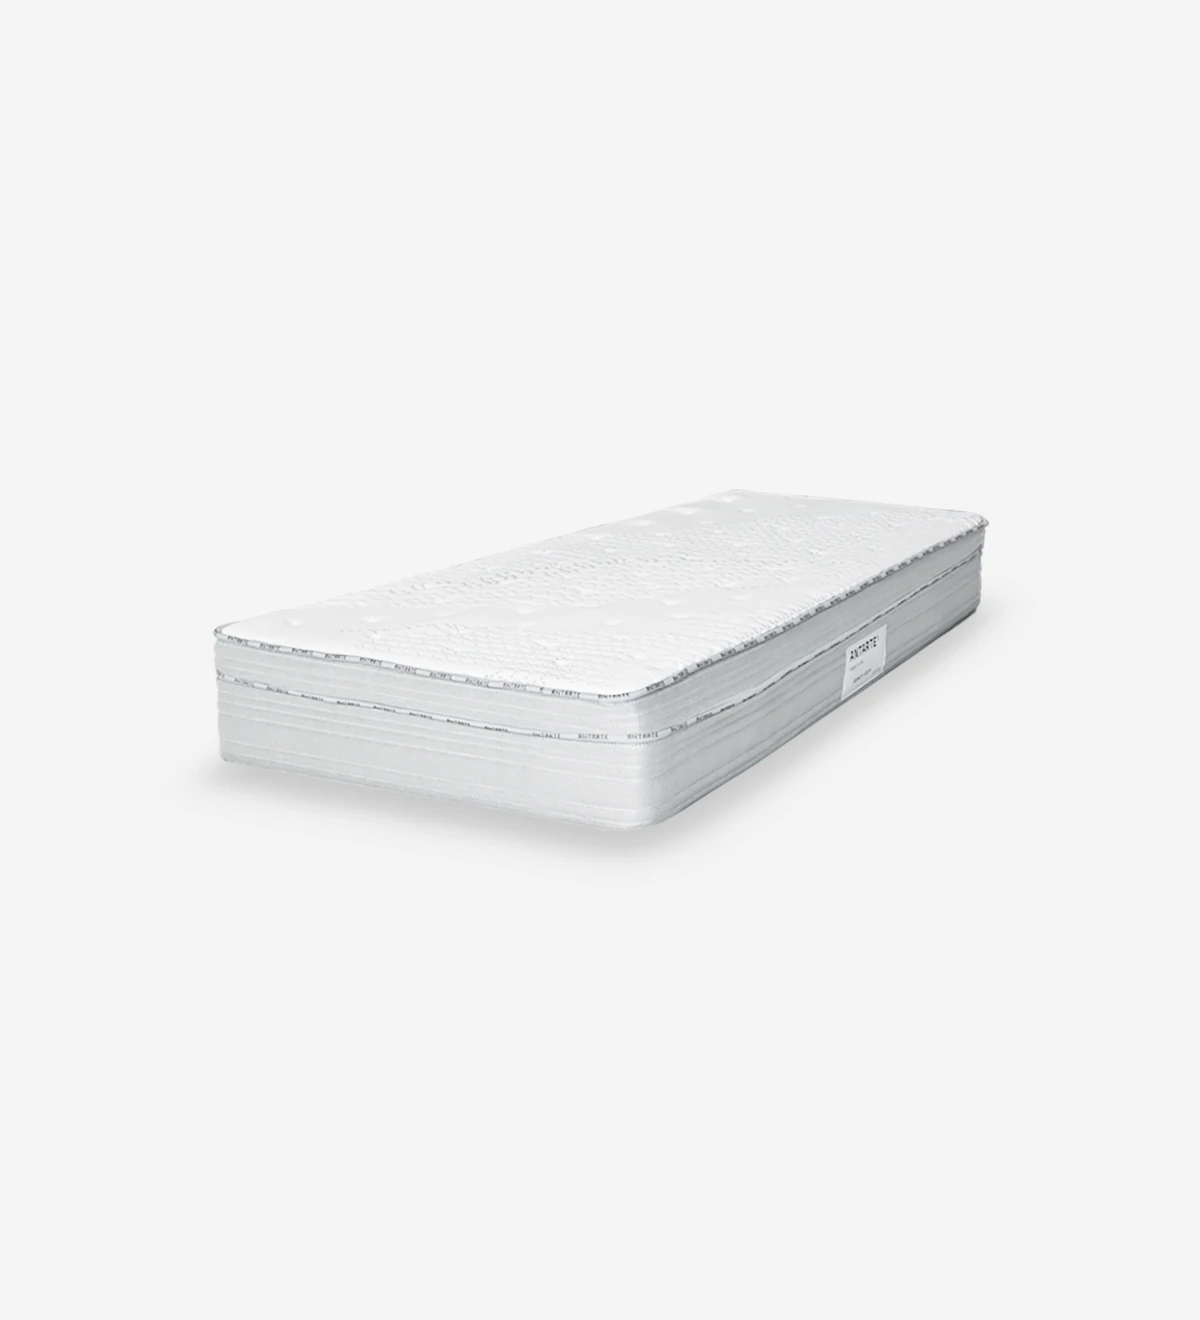 Colchón para camas dobles e individuales fabricado con una exclusiva fórmula de espuma patentada.